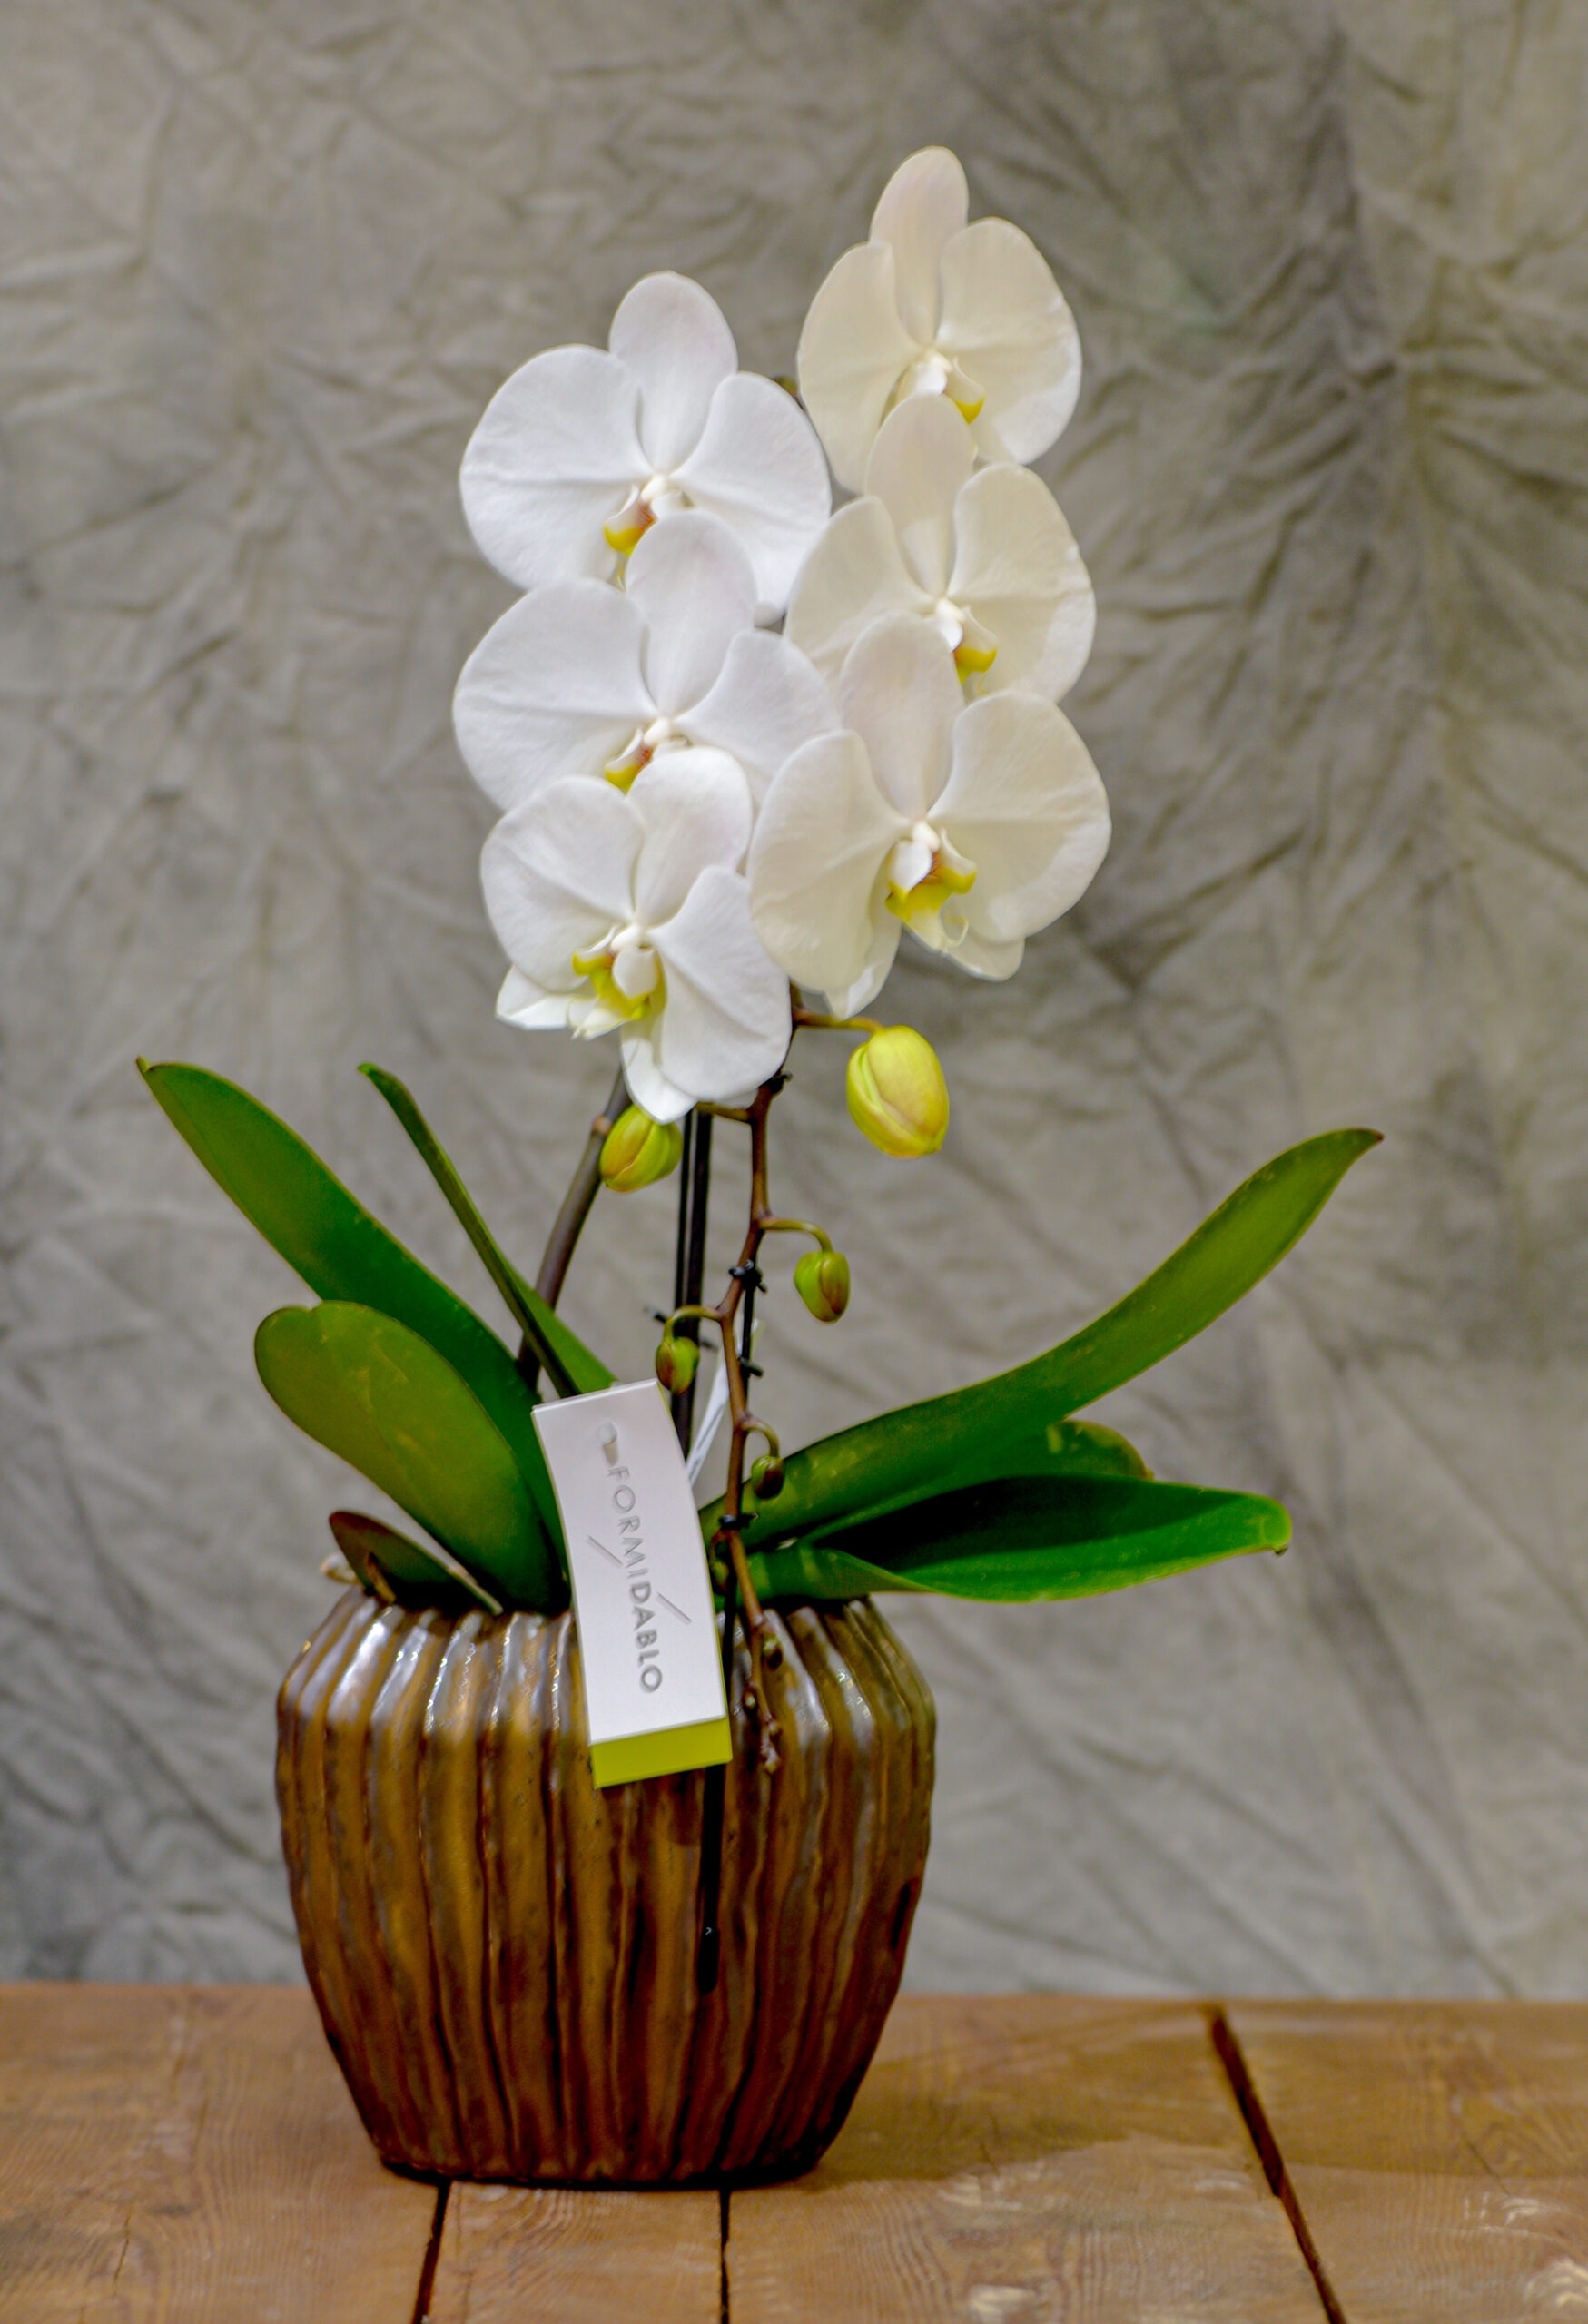 Orchidées bleues, injections et bistouri : Leurs secrets dévoilés !